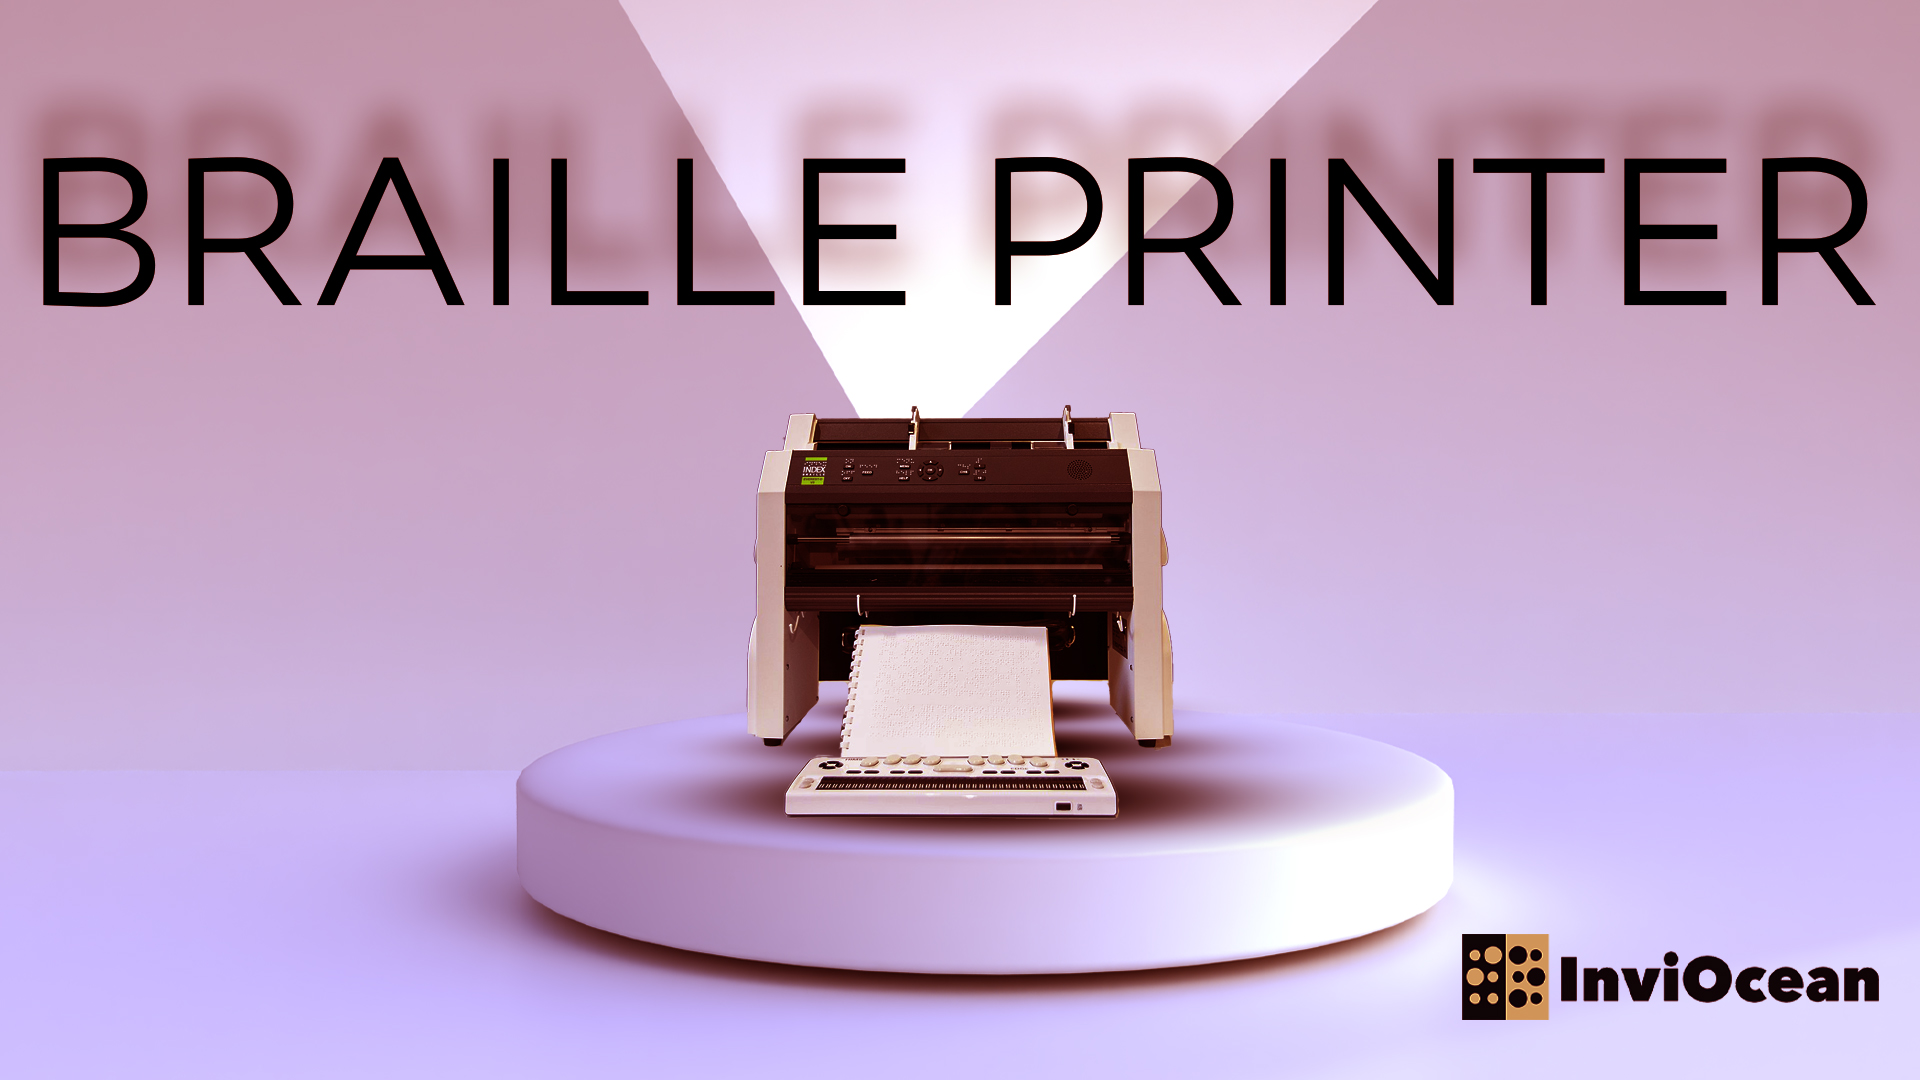 Braille printer